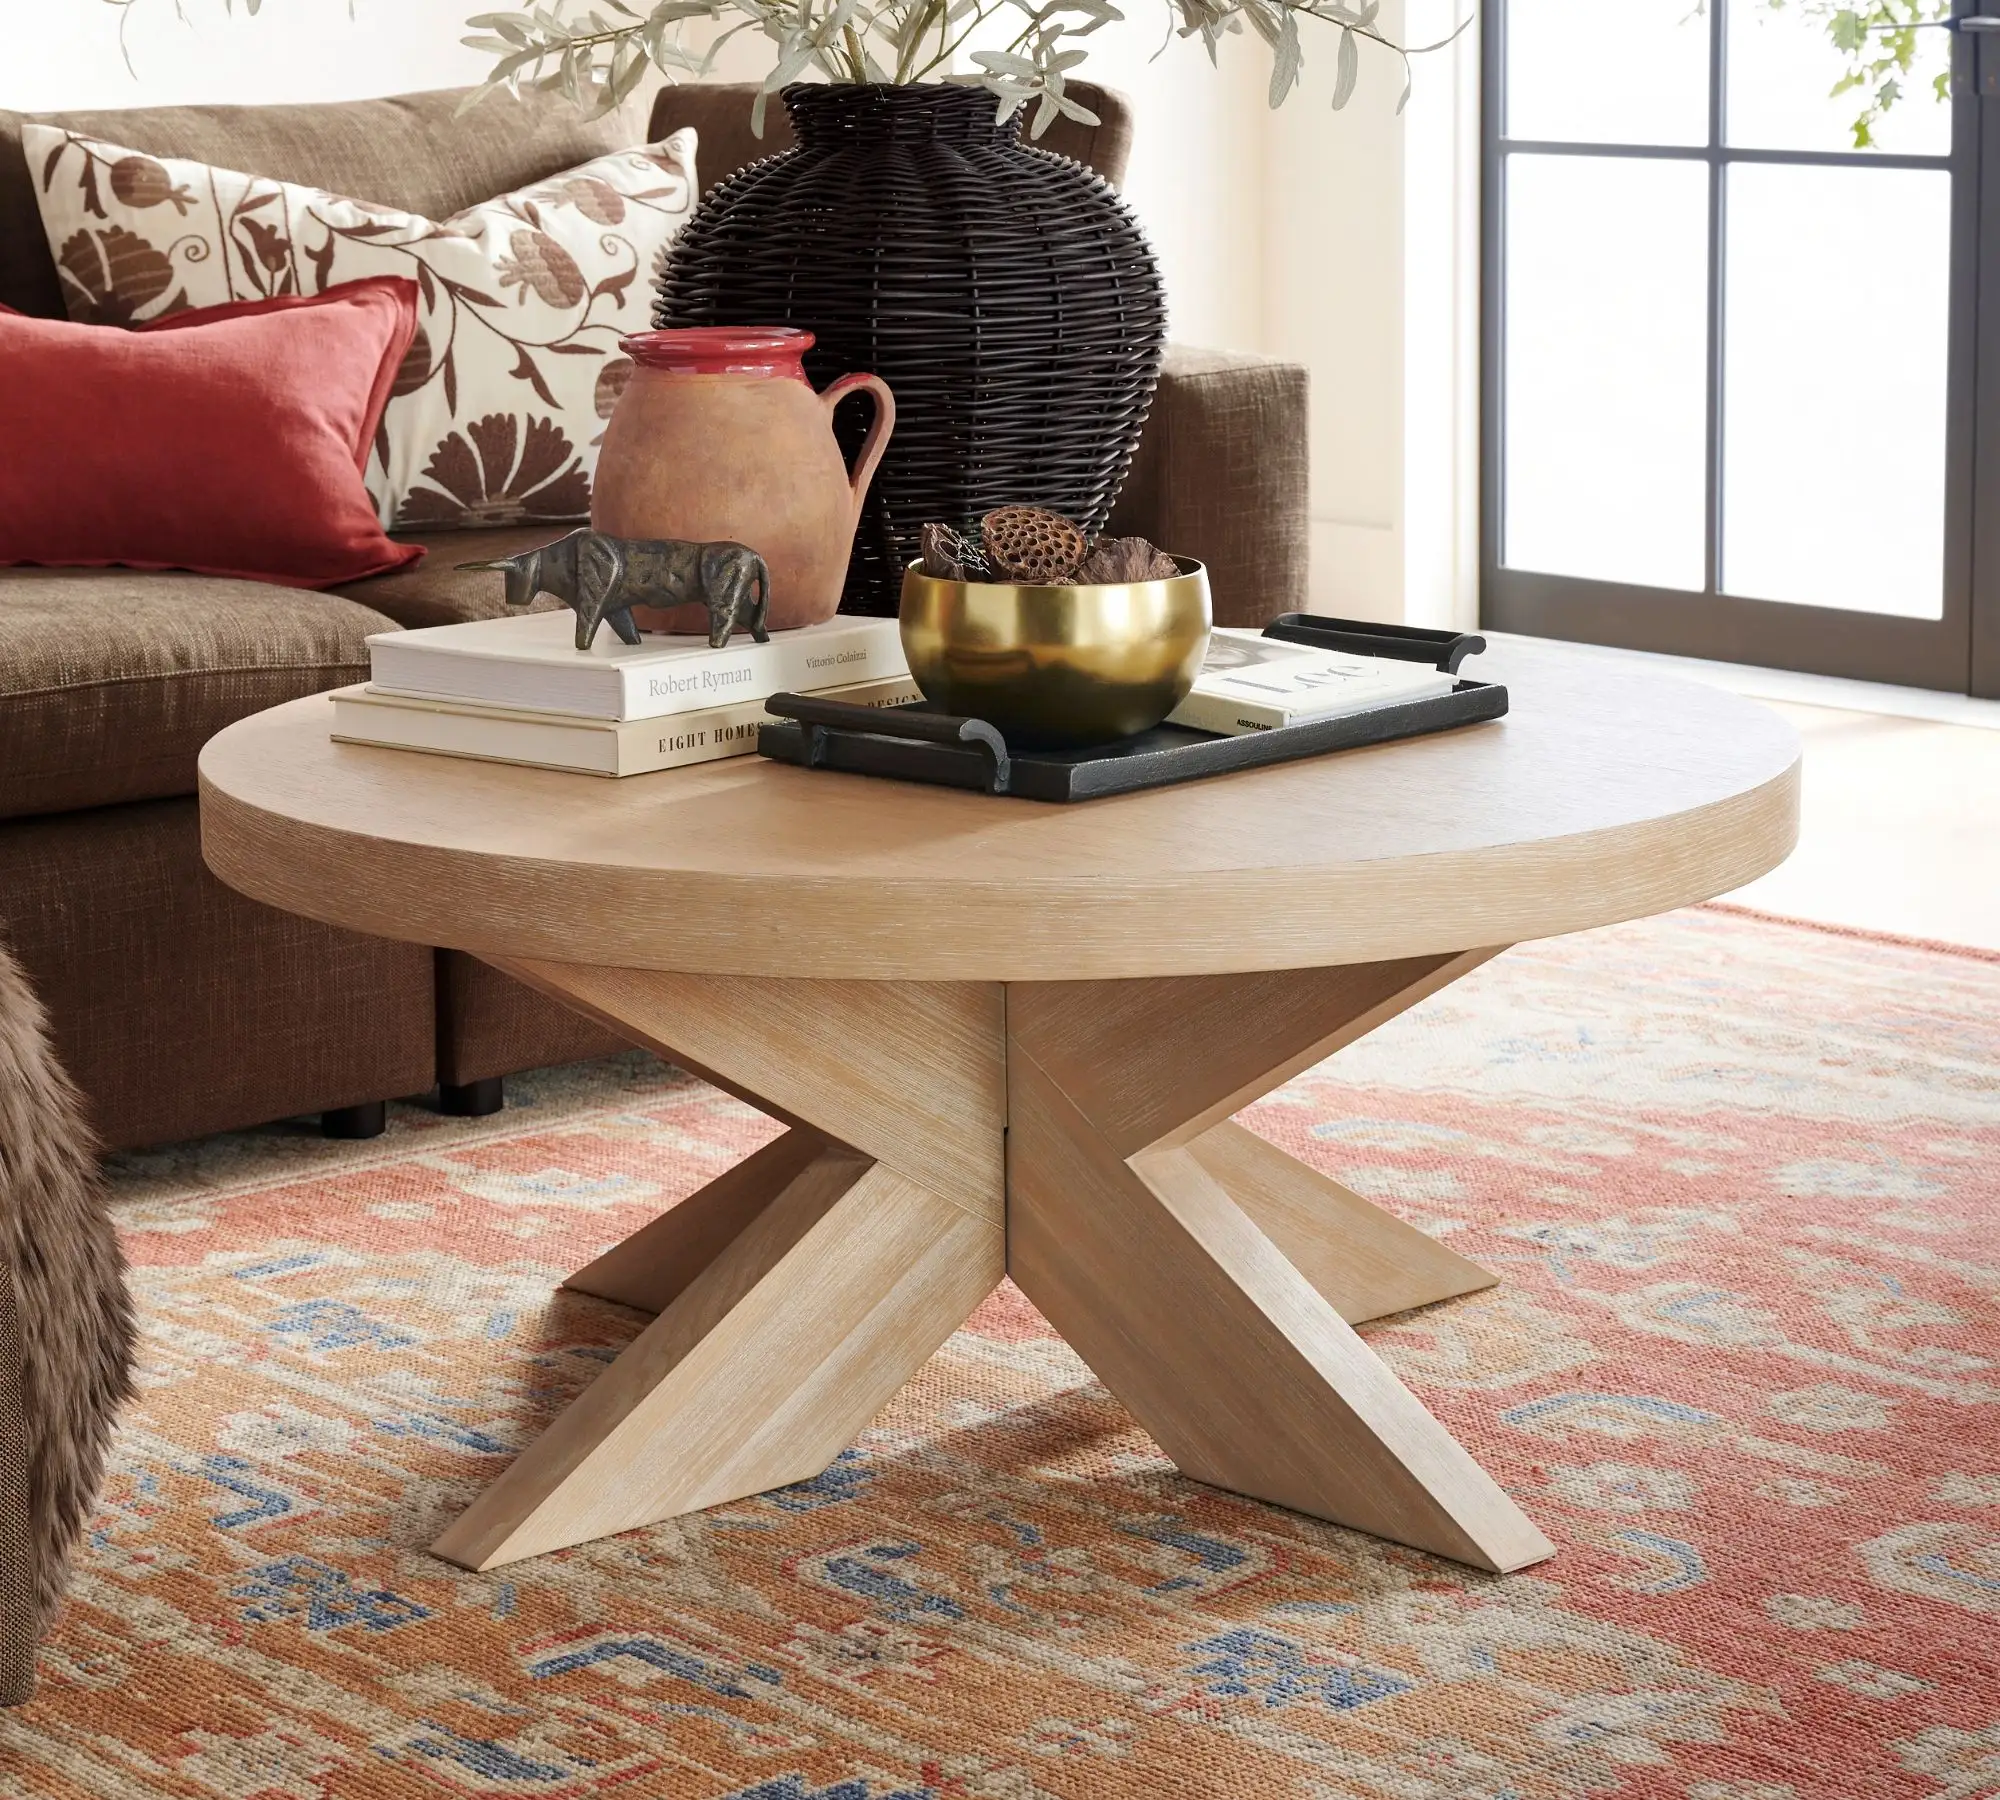 Starla mesa de centro rústica redonda em madeira maciça de teca com acabamento natural para interior e exterior.